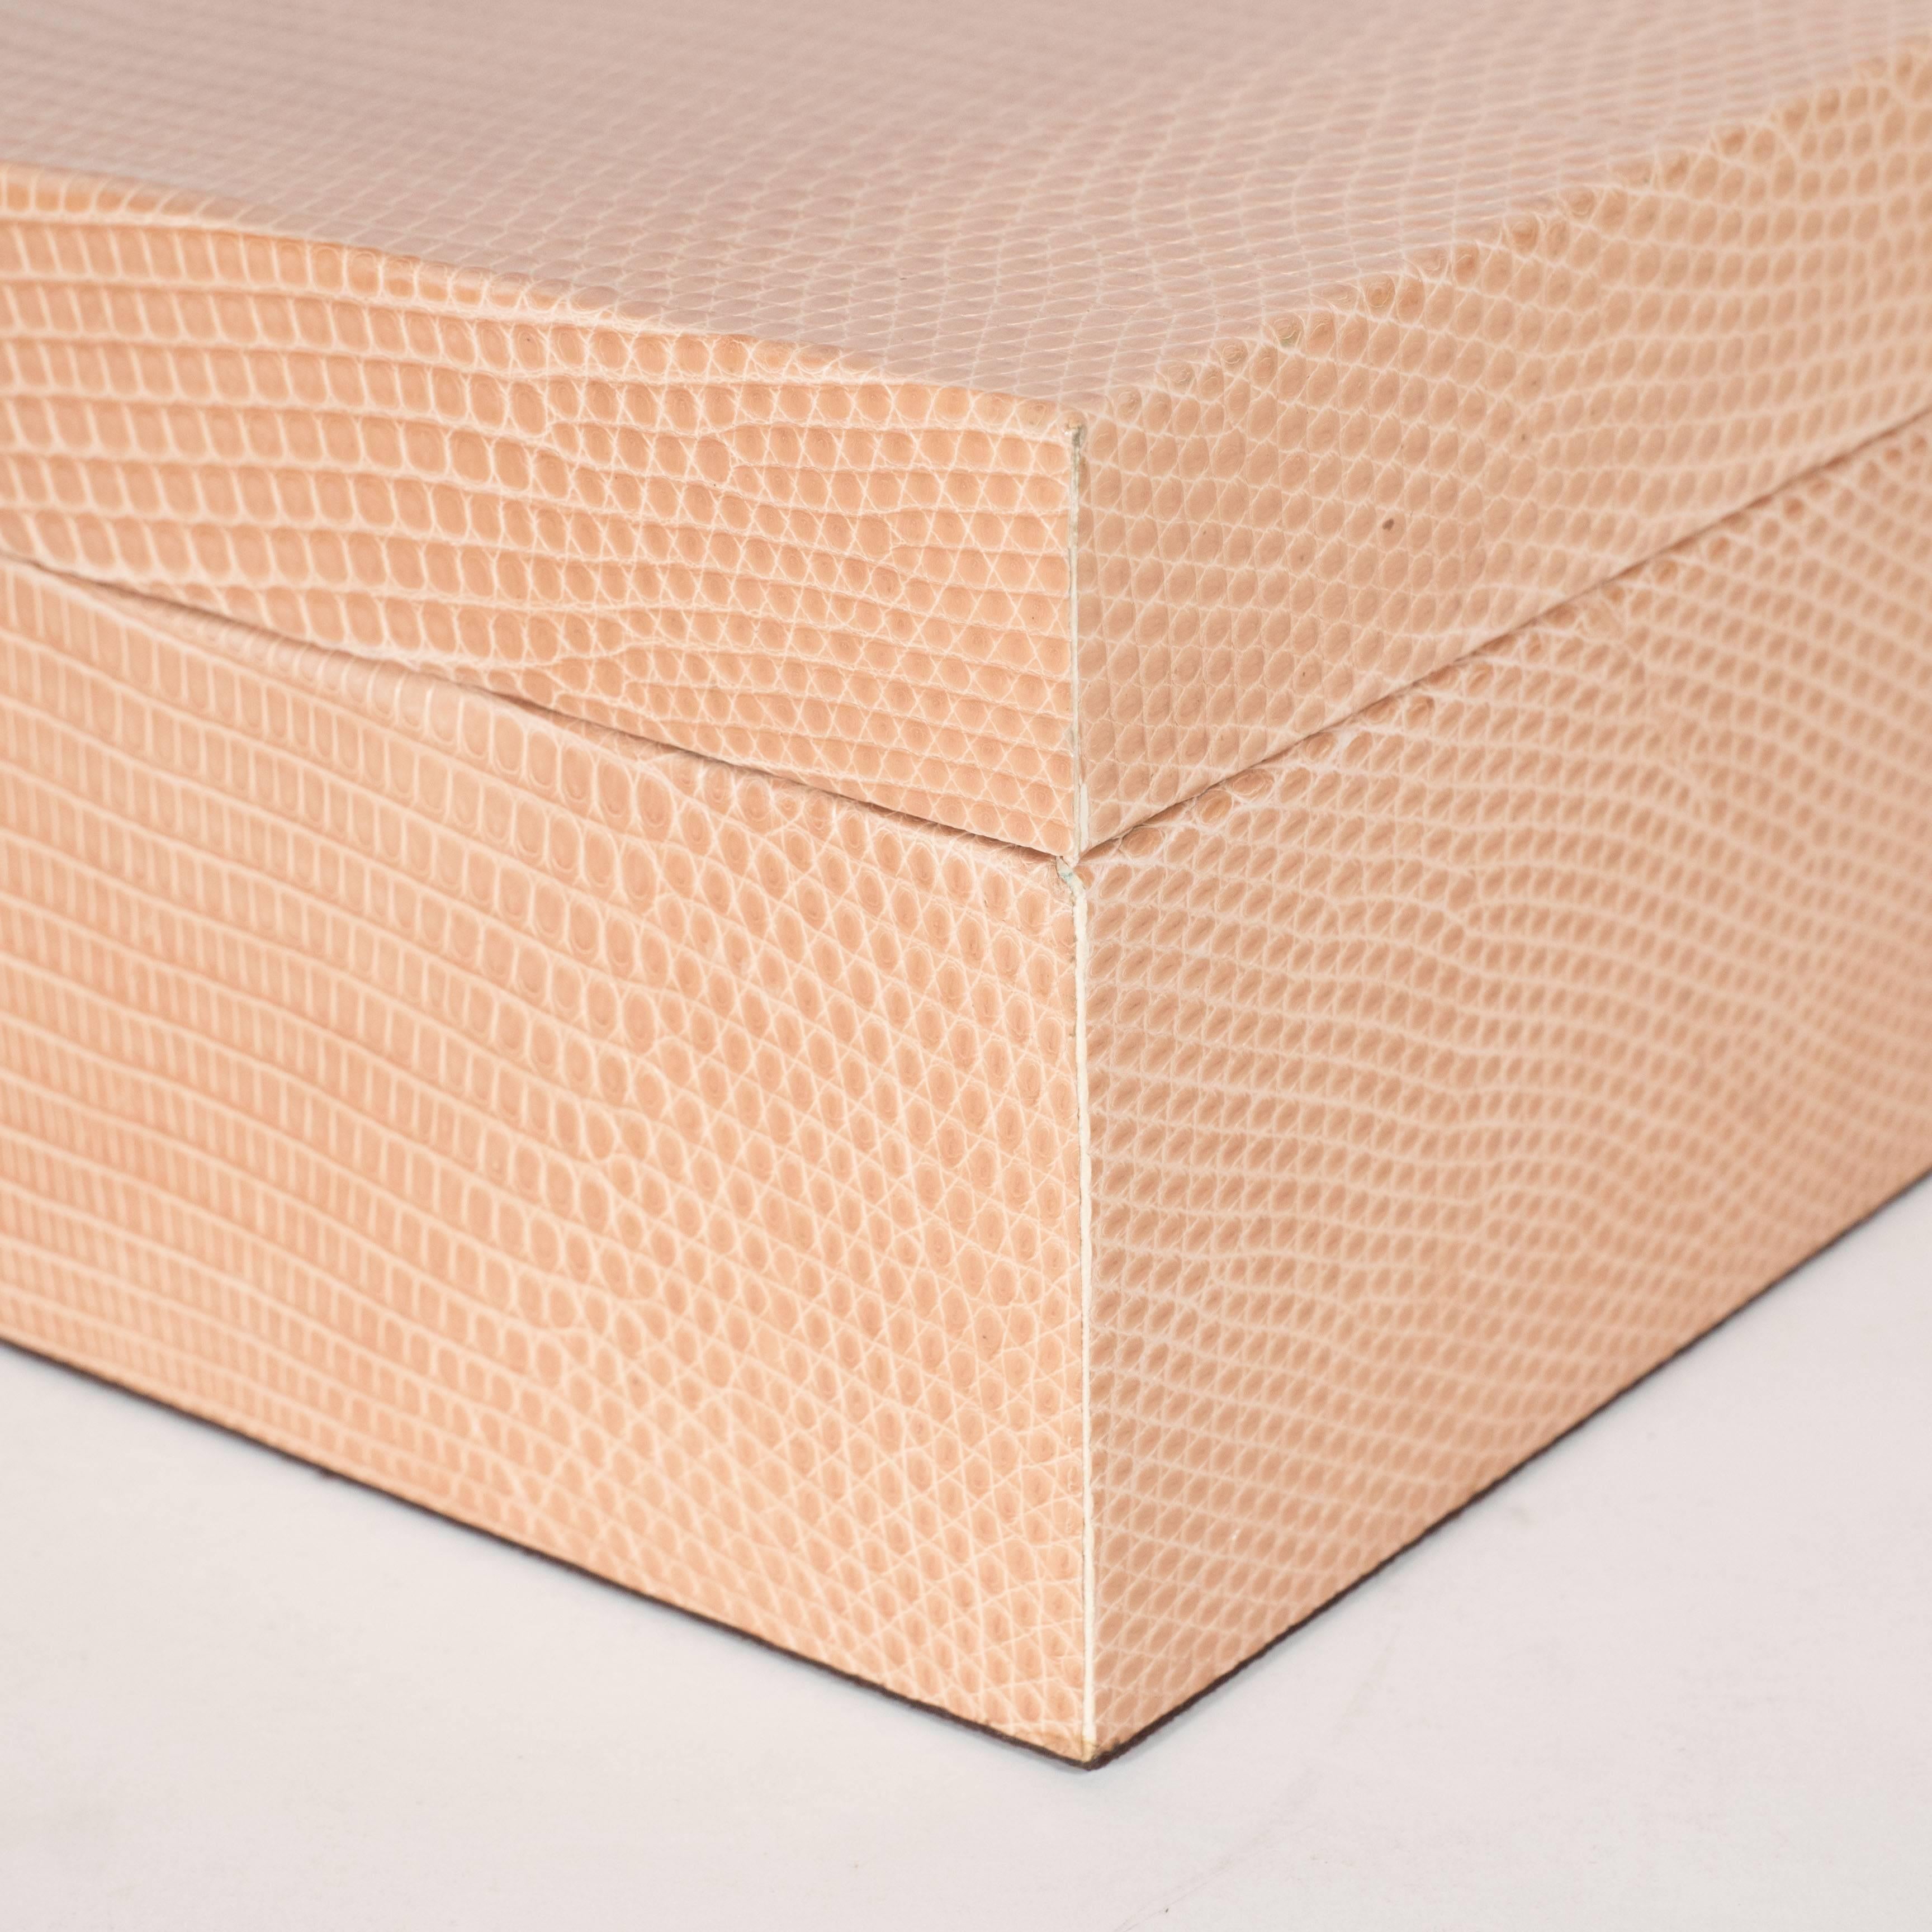 Une boîte d'allumettes moderniste en peau de lézard avec un couvercle amovible. L'intérieur est revêtu d'une ultra-suède brun foncé et le couvercle est soutenu par des socles en bois situés sur deux côtés opposés de la base. Parfait pour ranger des